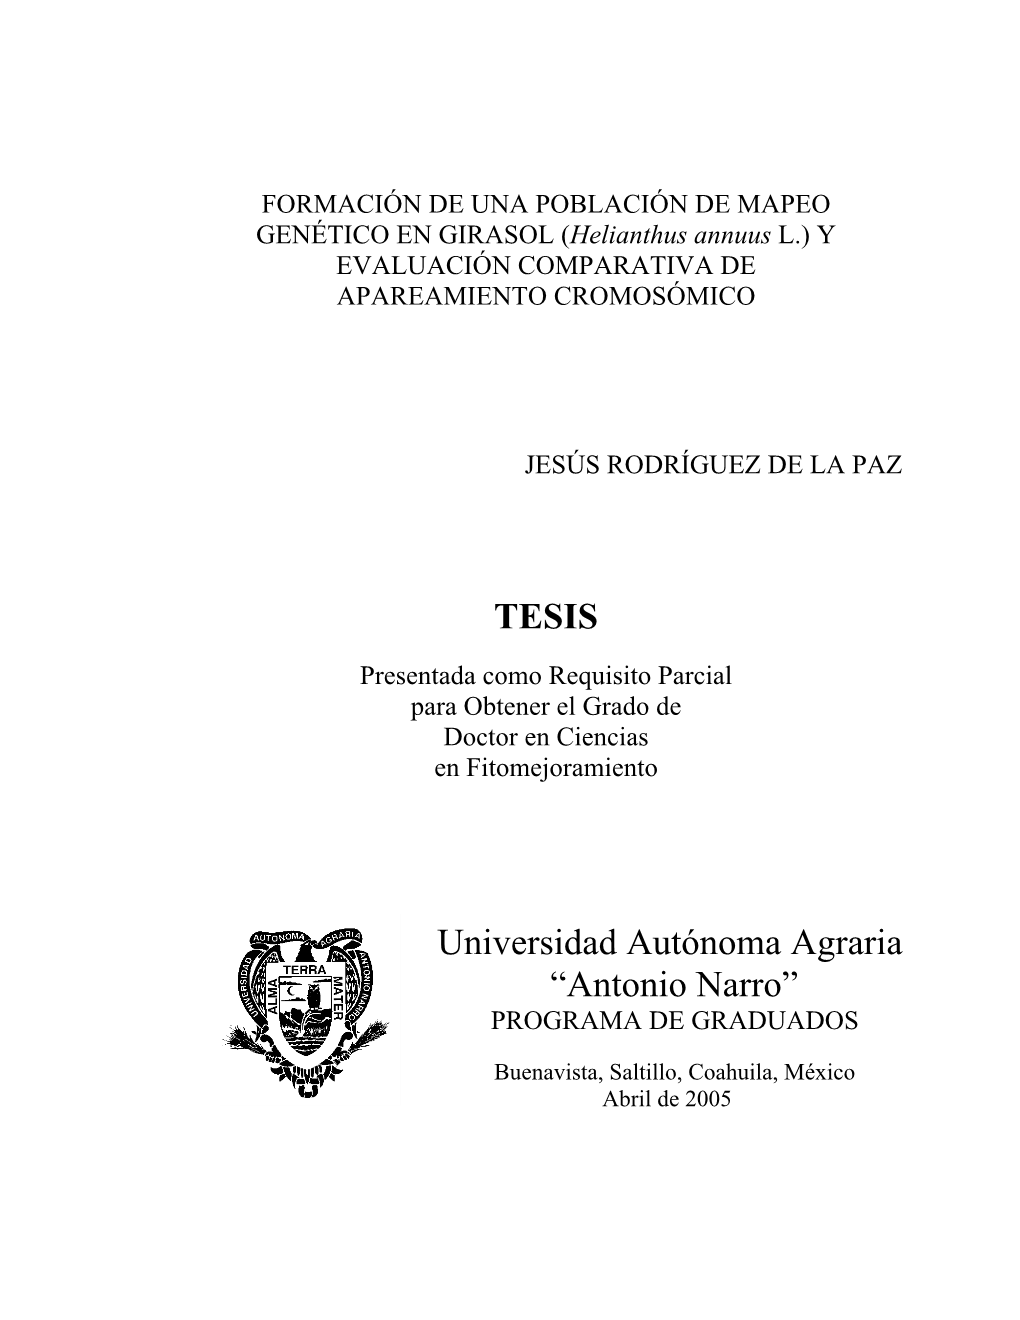 Helianthus Annuus L.) Y EVALUACIÓN COMPARATIVA DE APAREAMIENTO CROMOSÓMICO